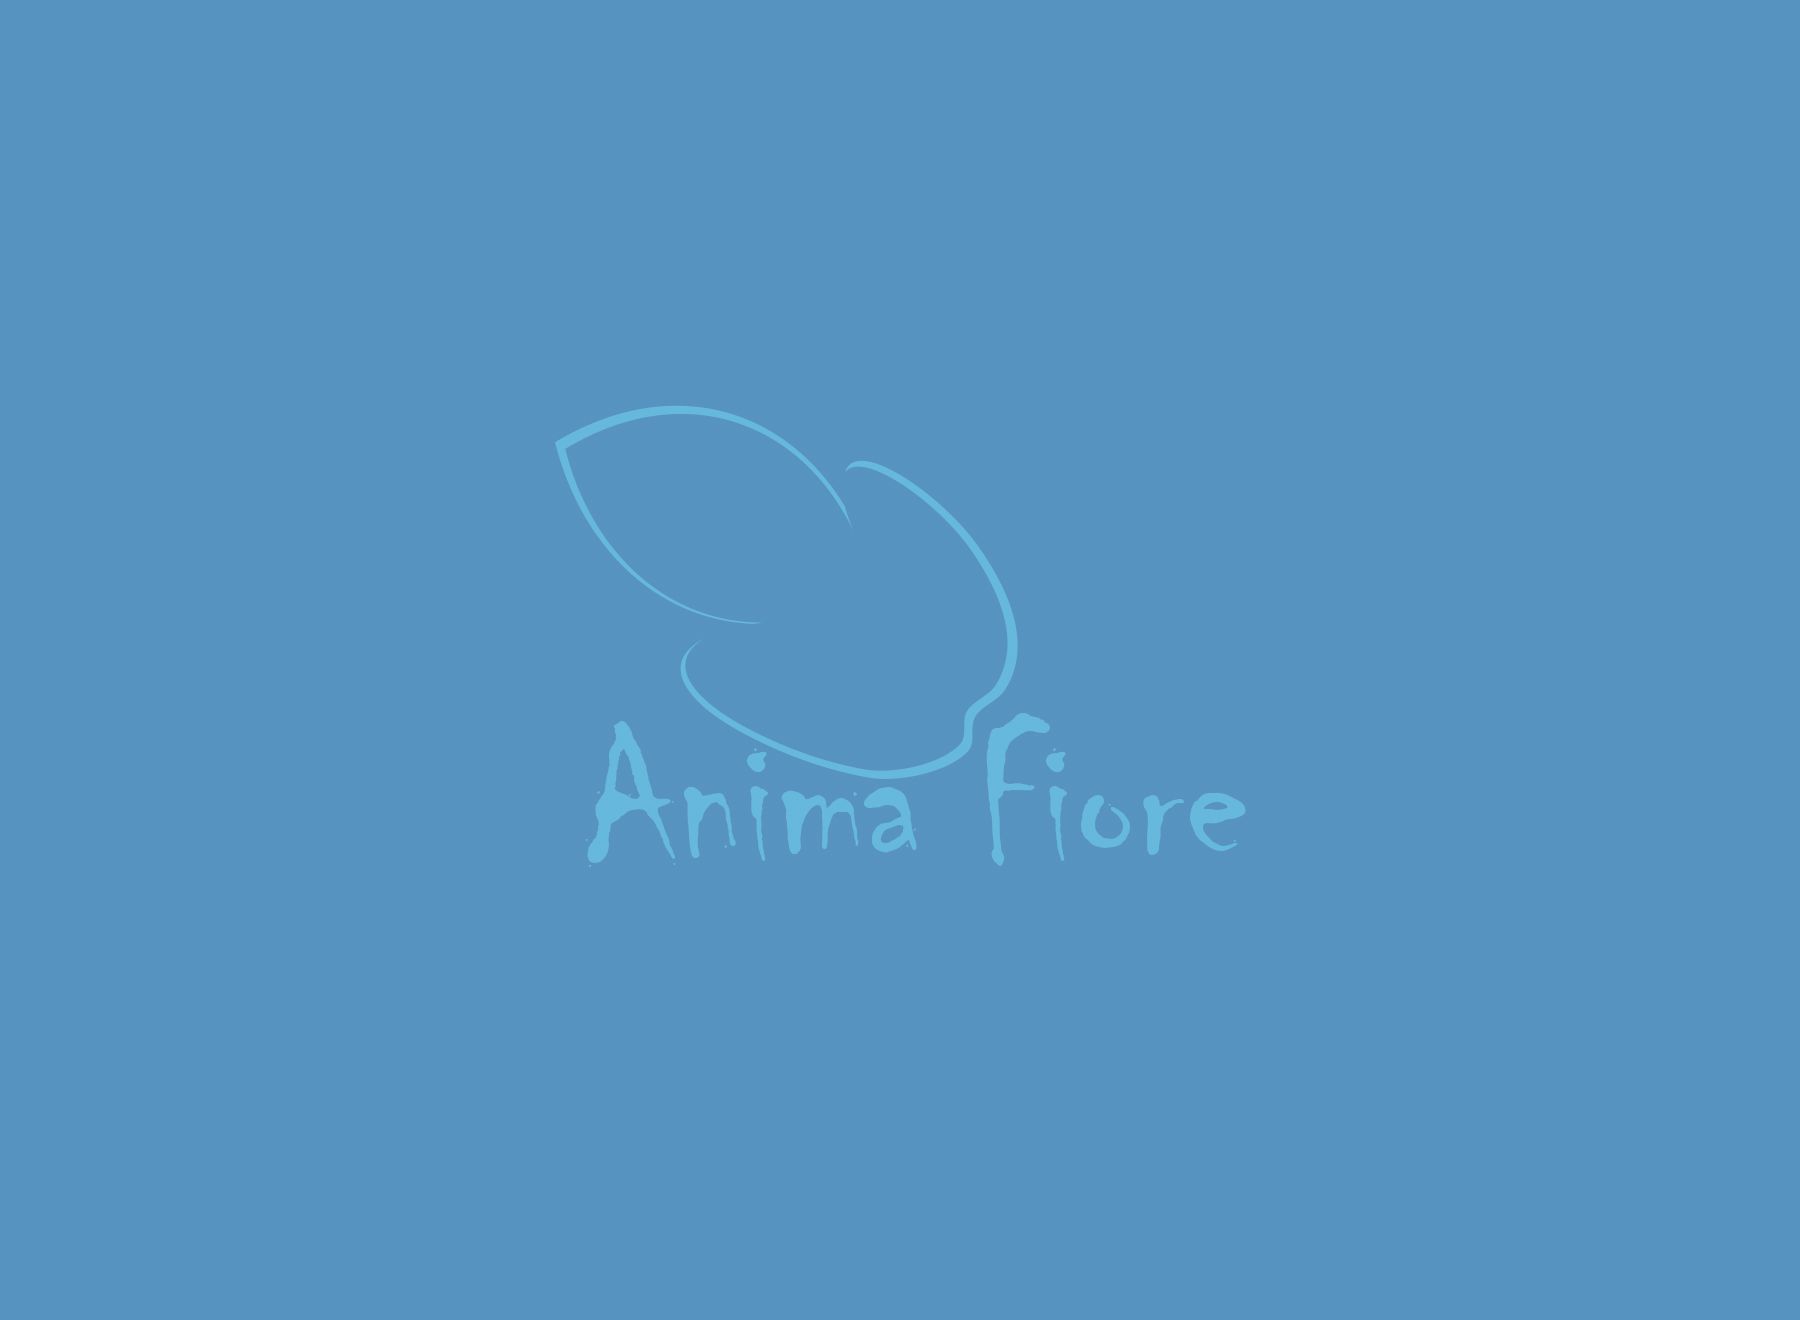 Лого и фирменный стиль для ANIMA FIORE - дизайнер Vocej